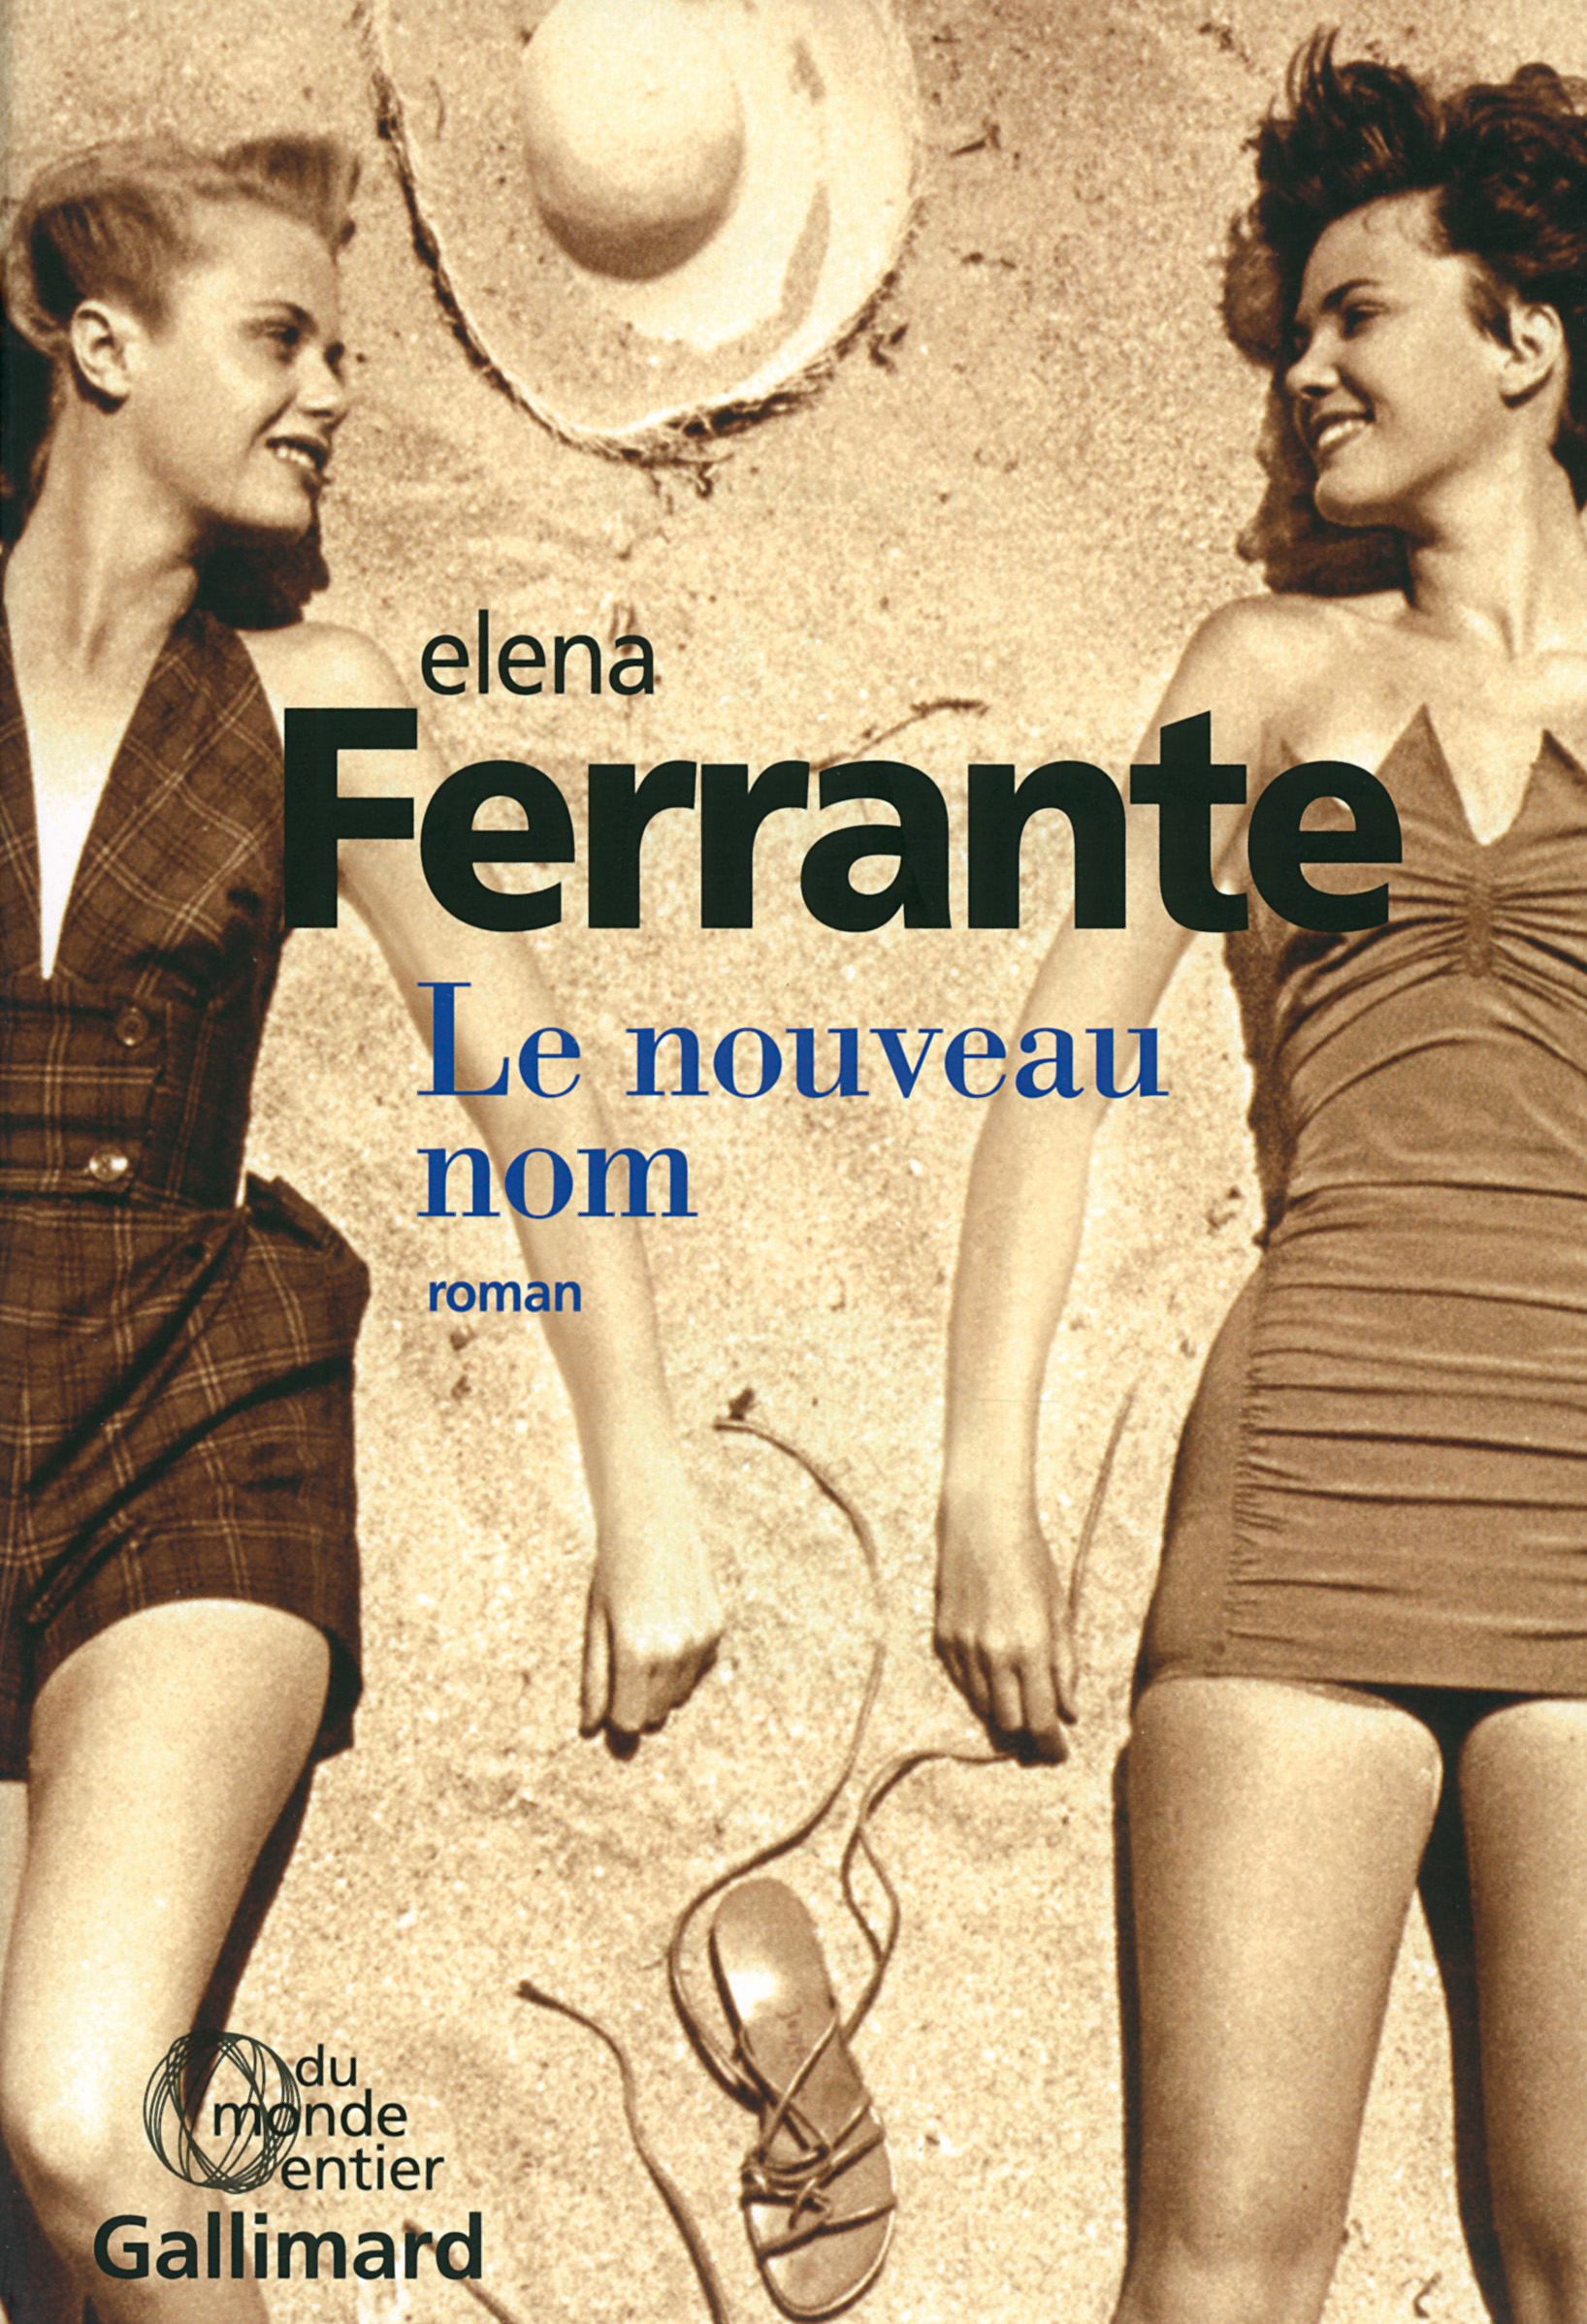 Entre écriture et traduction : la langue étrangère d’Elena Ferrante